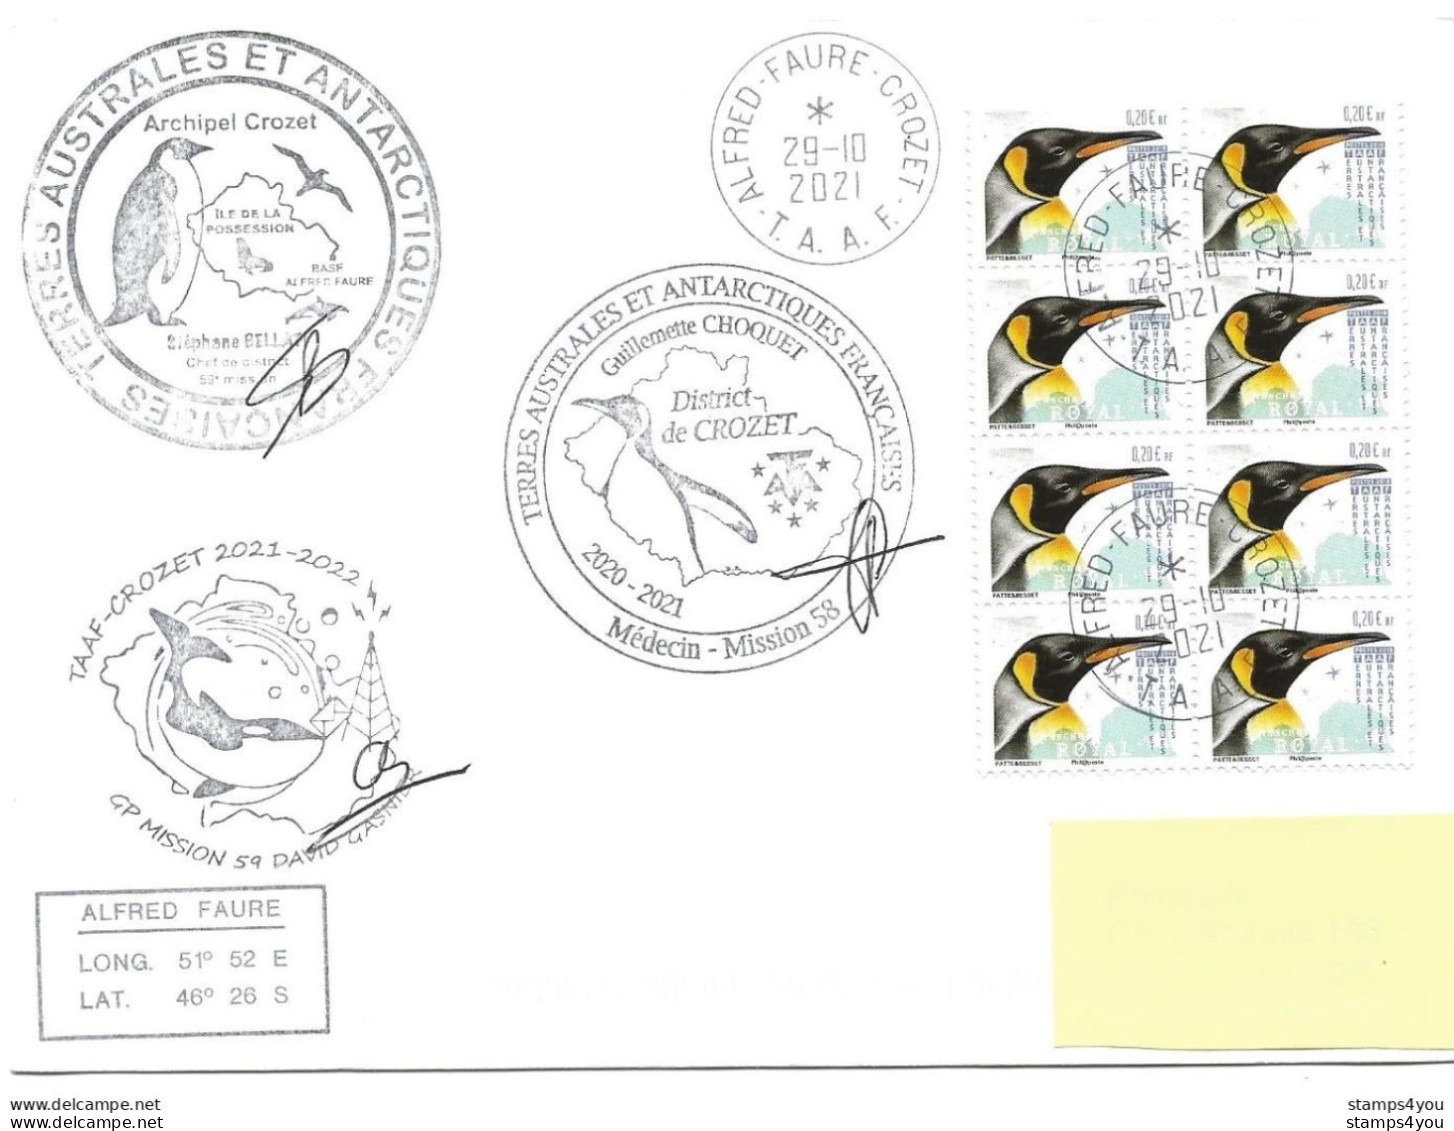 255 - 67 - Enveloippe TAAF Crozet - Cachets Illustrés Mission 59 - 2021 - Research Stations